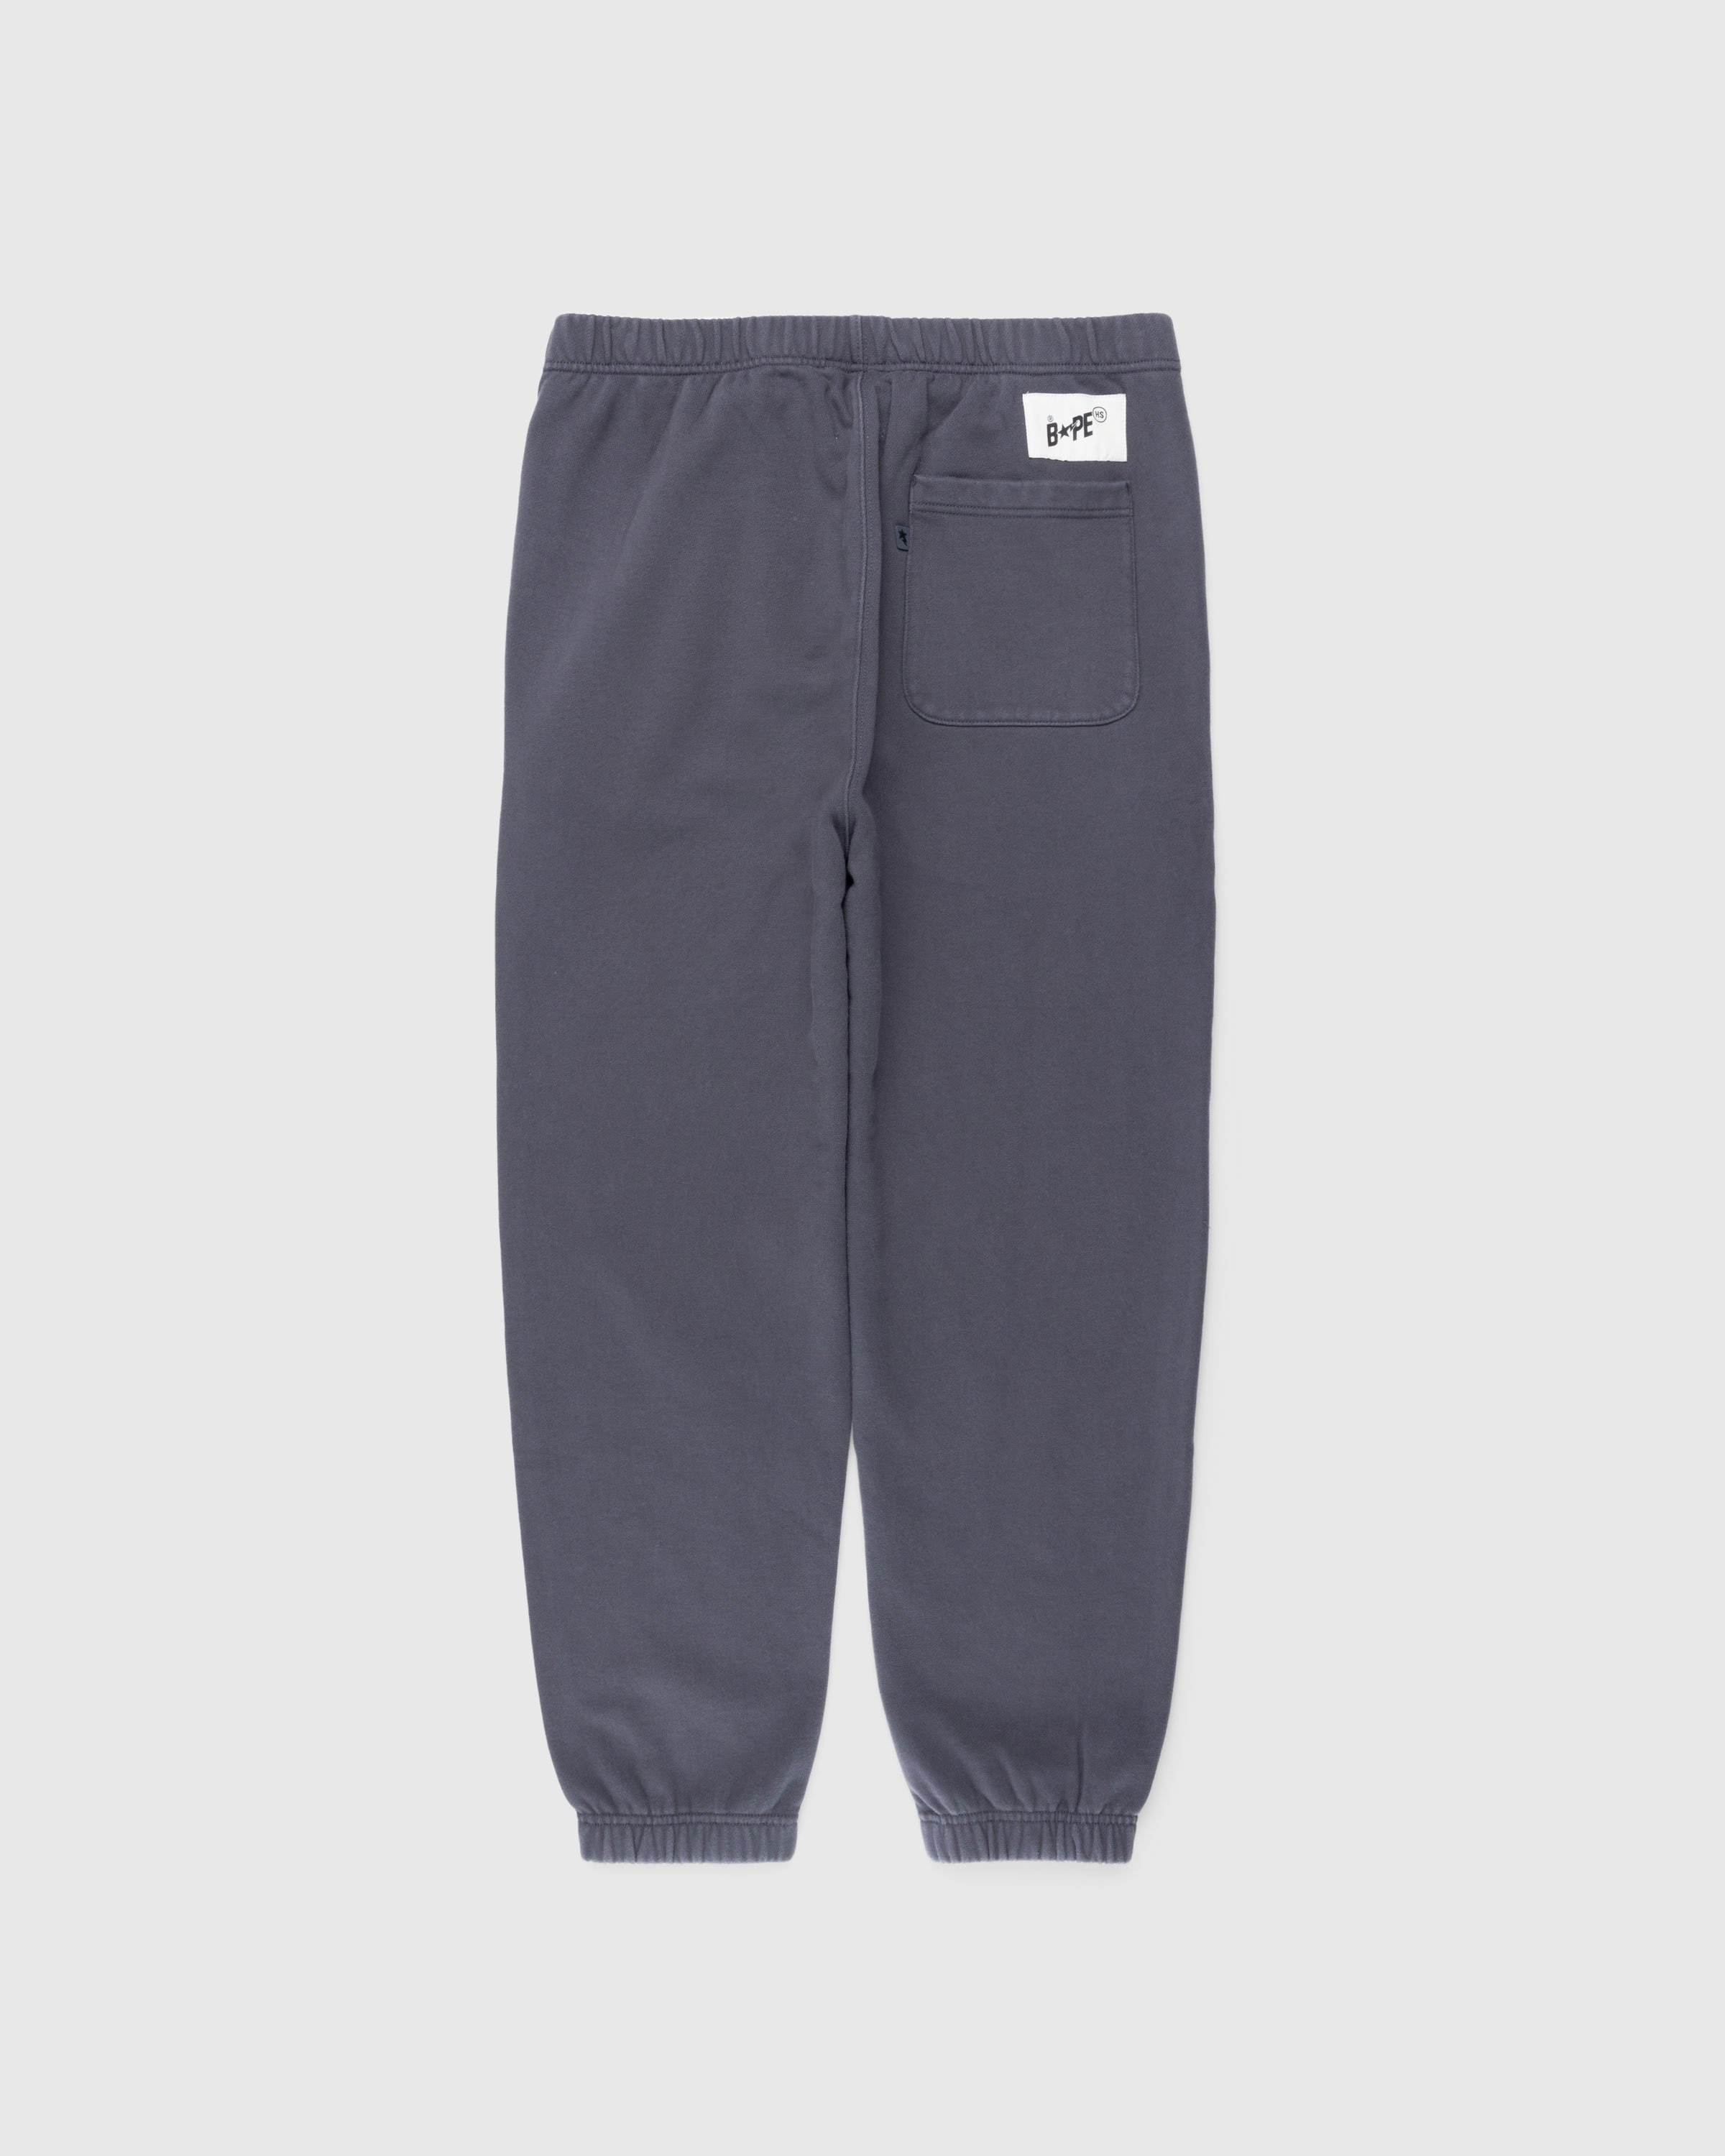 BAPE x Highsnobiety - Heavy Washed Sweat Pants Charcoal - Clothing - Grey - Image 2